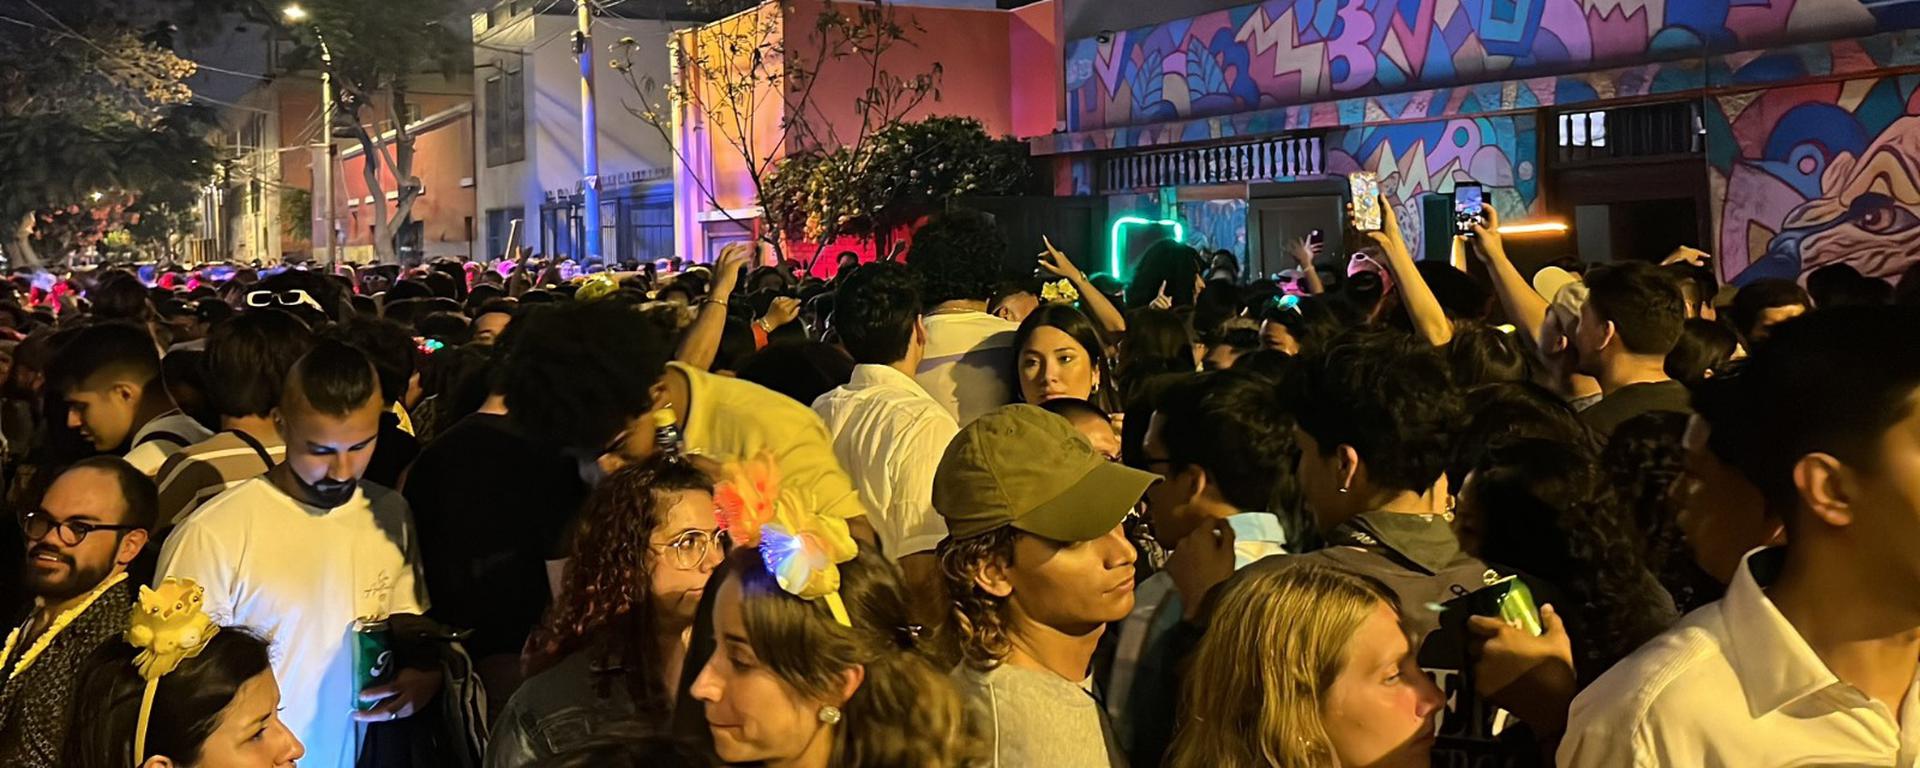 Municipalidad de Barranco no autorizó fiestas callejeras en “El Triangulito”: la polémica y las oportunidades para el espacio público